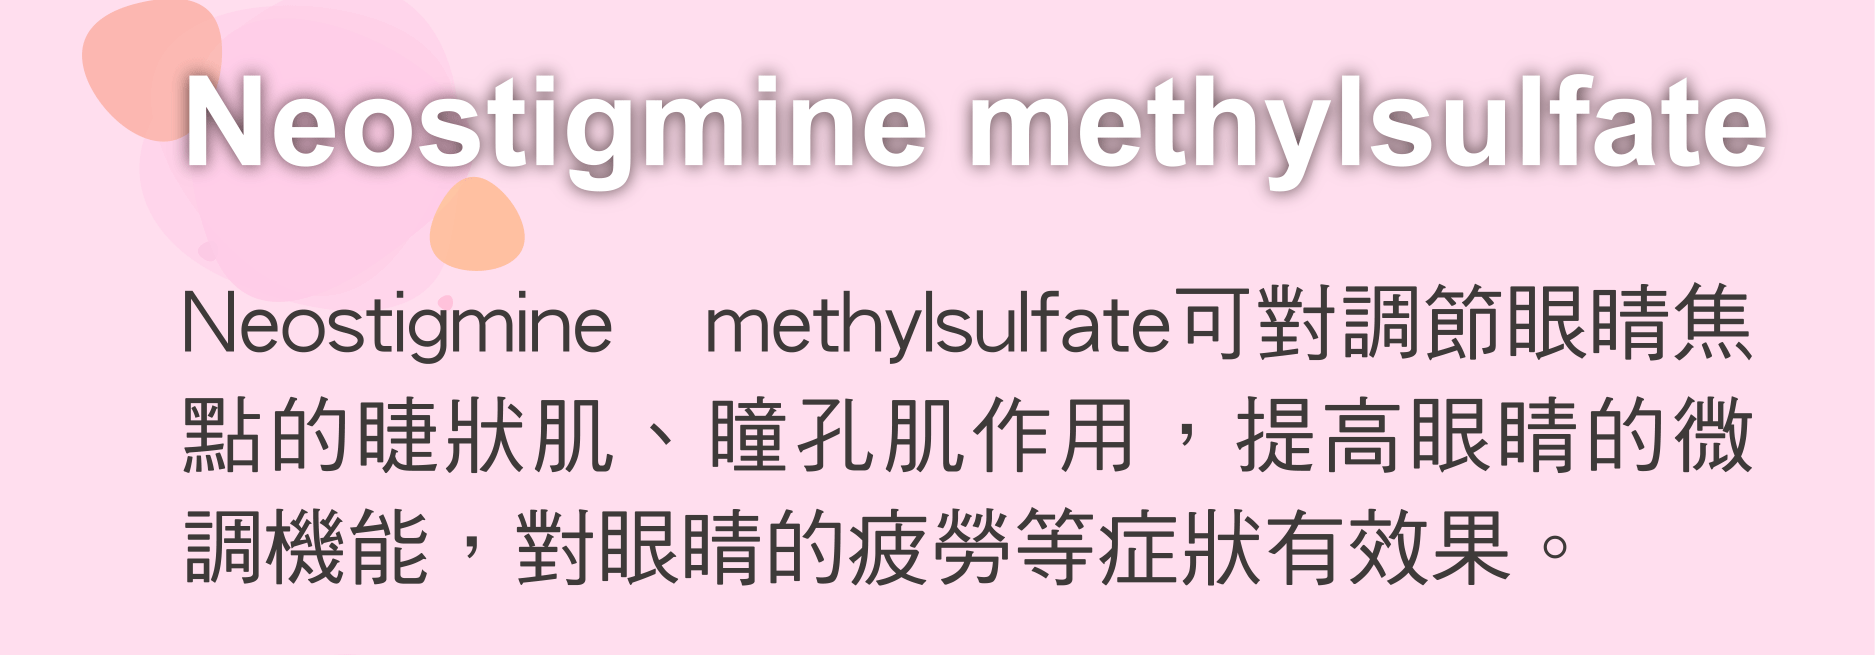 Neostigmine methylsulfate 可對調節眼睛焦點的睫狀肌、瞳孔肌作用，提高眼睛的微調機能，對眼睛的疲勞等症狀有效果。